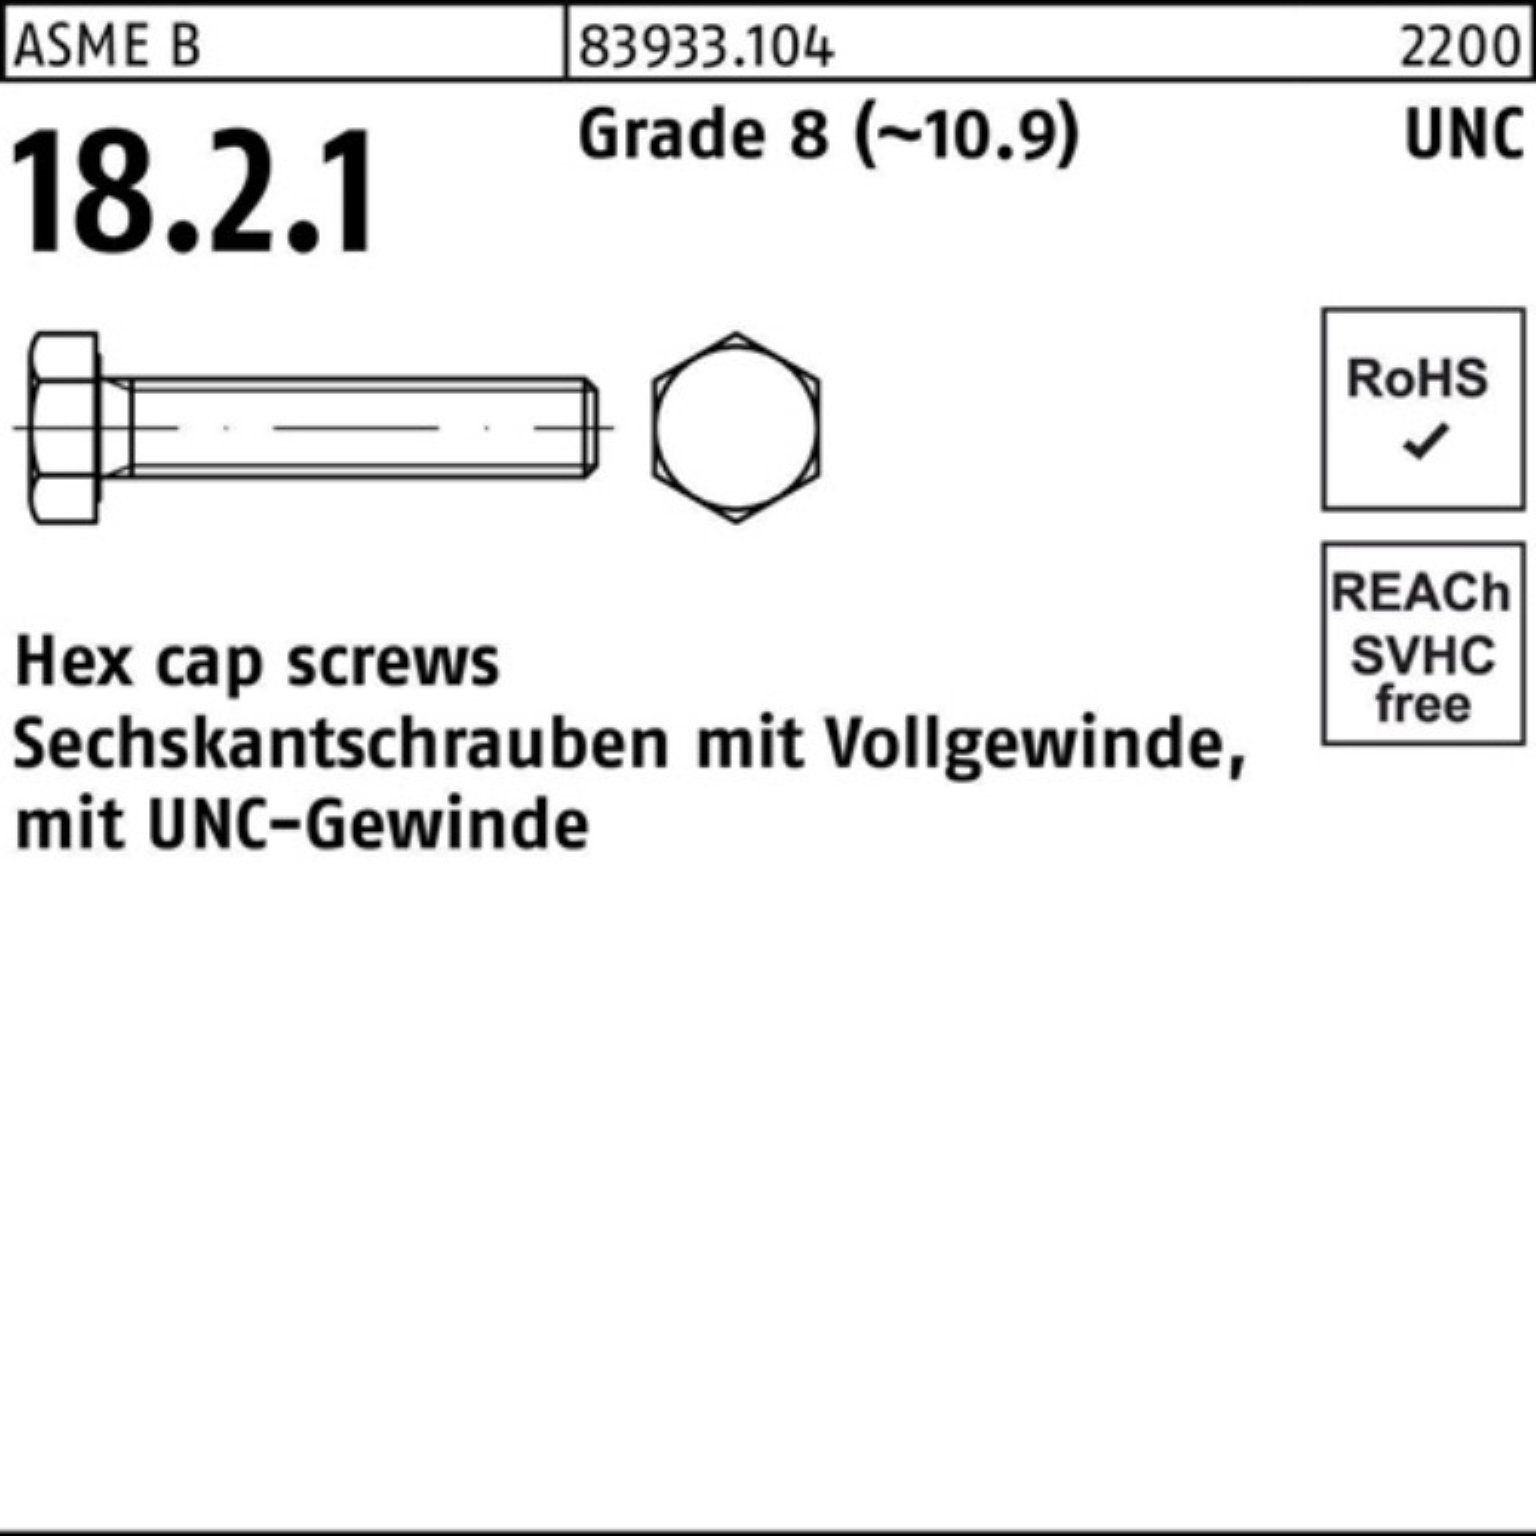 Reyher Sechskantschraube 100er Pack Sechskantschraube R 83933 UNC-Gewinde VG 1x 1 1/2 Grade 8